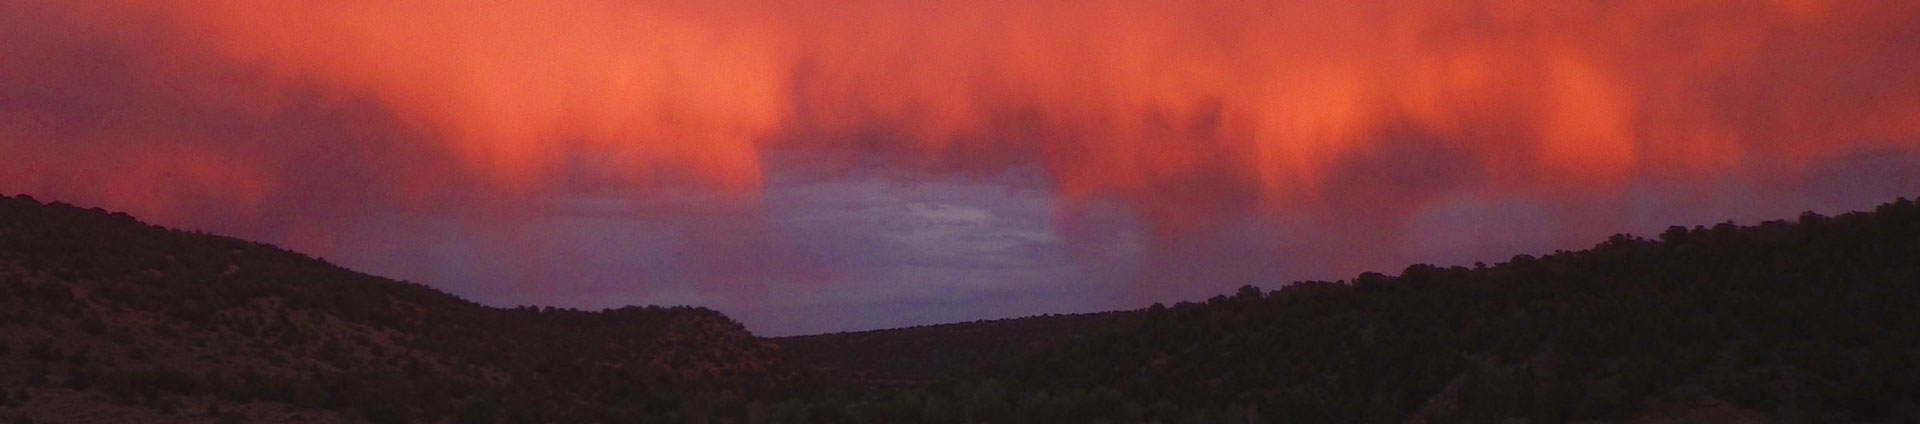 imagen de cabecera de nubes rojas y naranjas